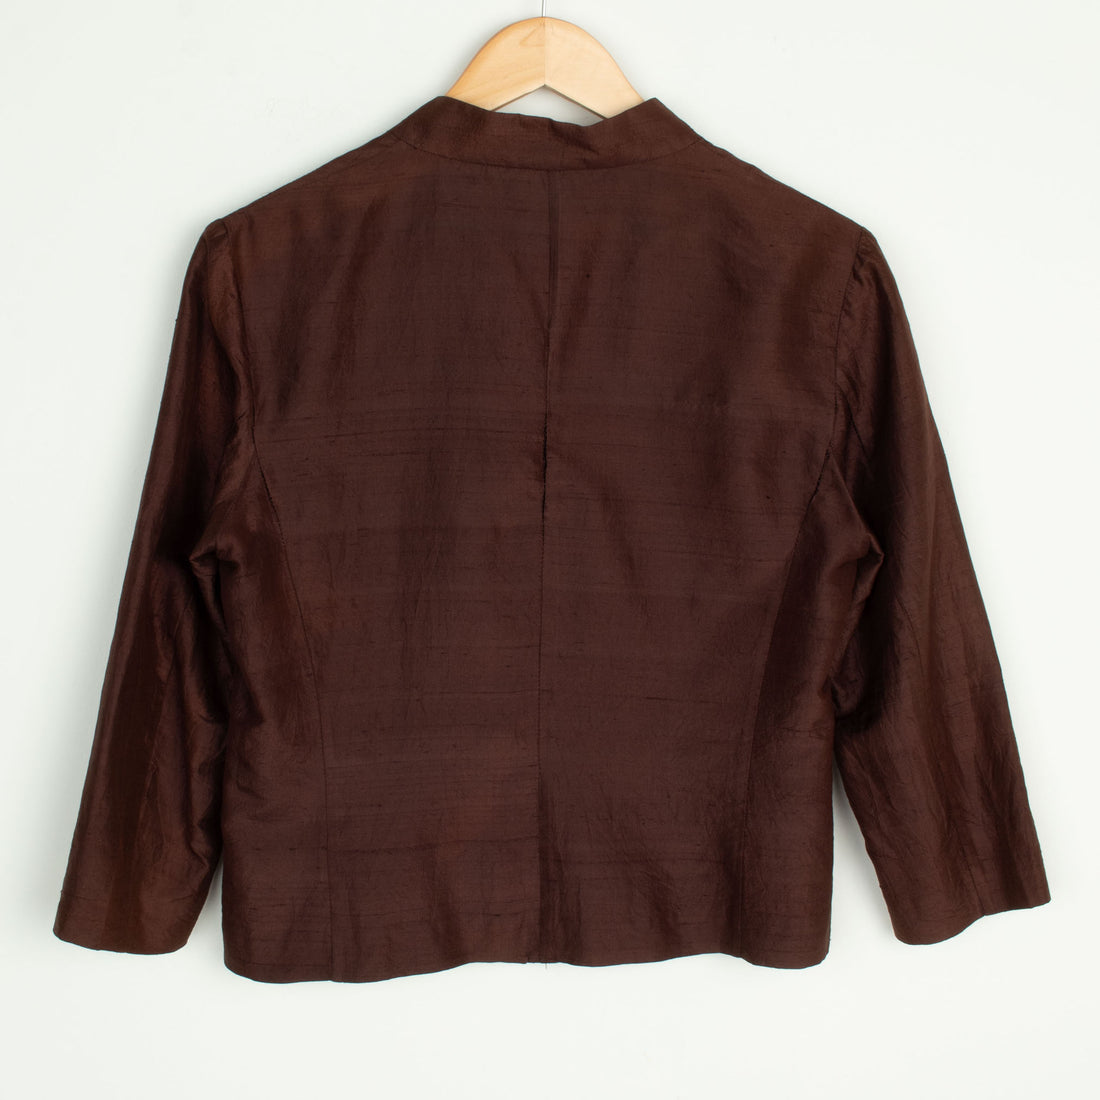 Brown Silk Jacket / Top